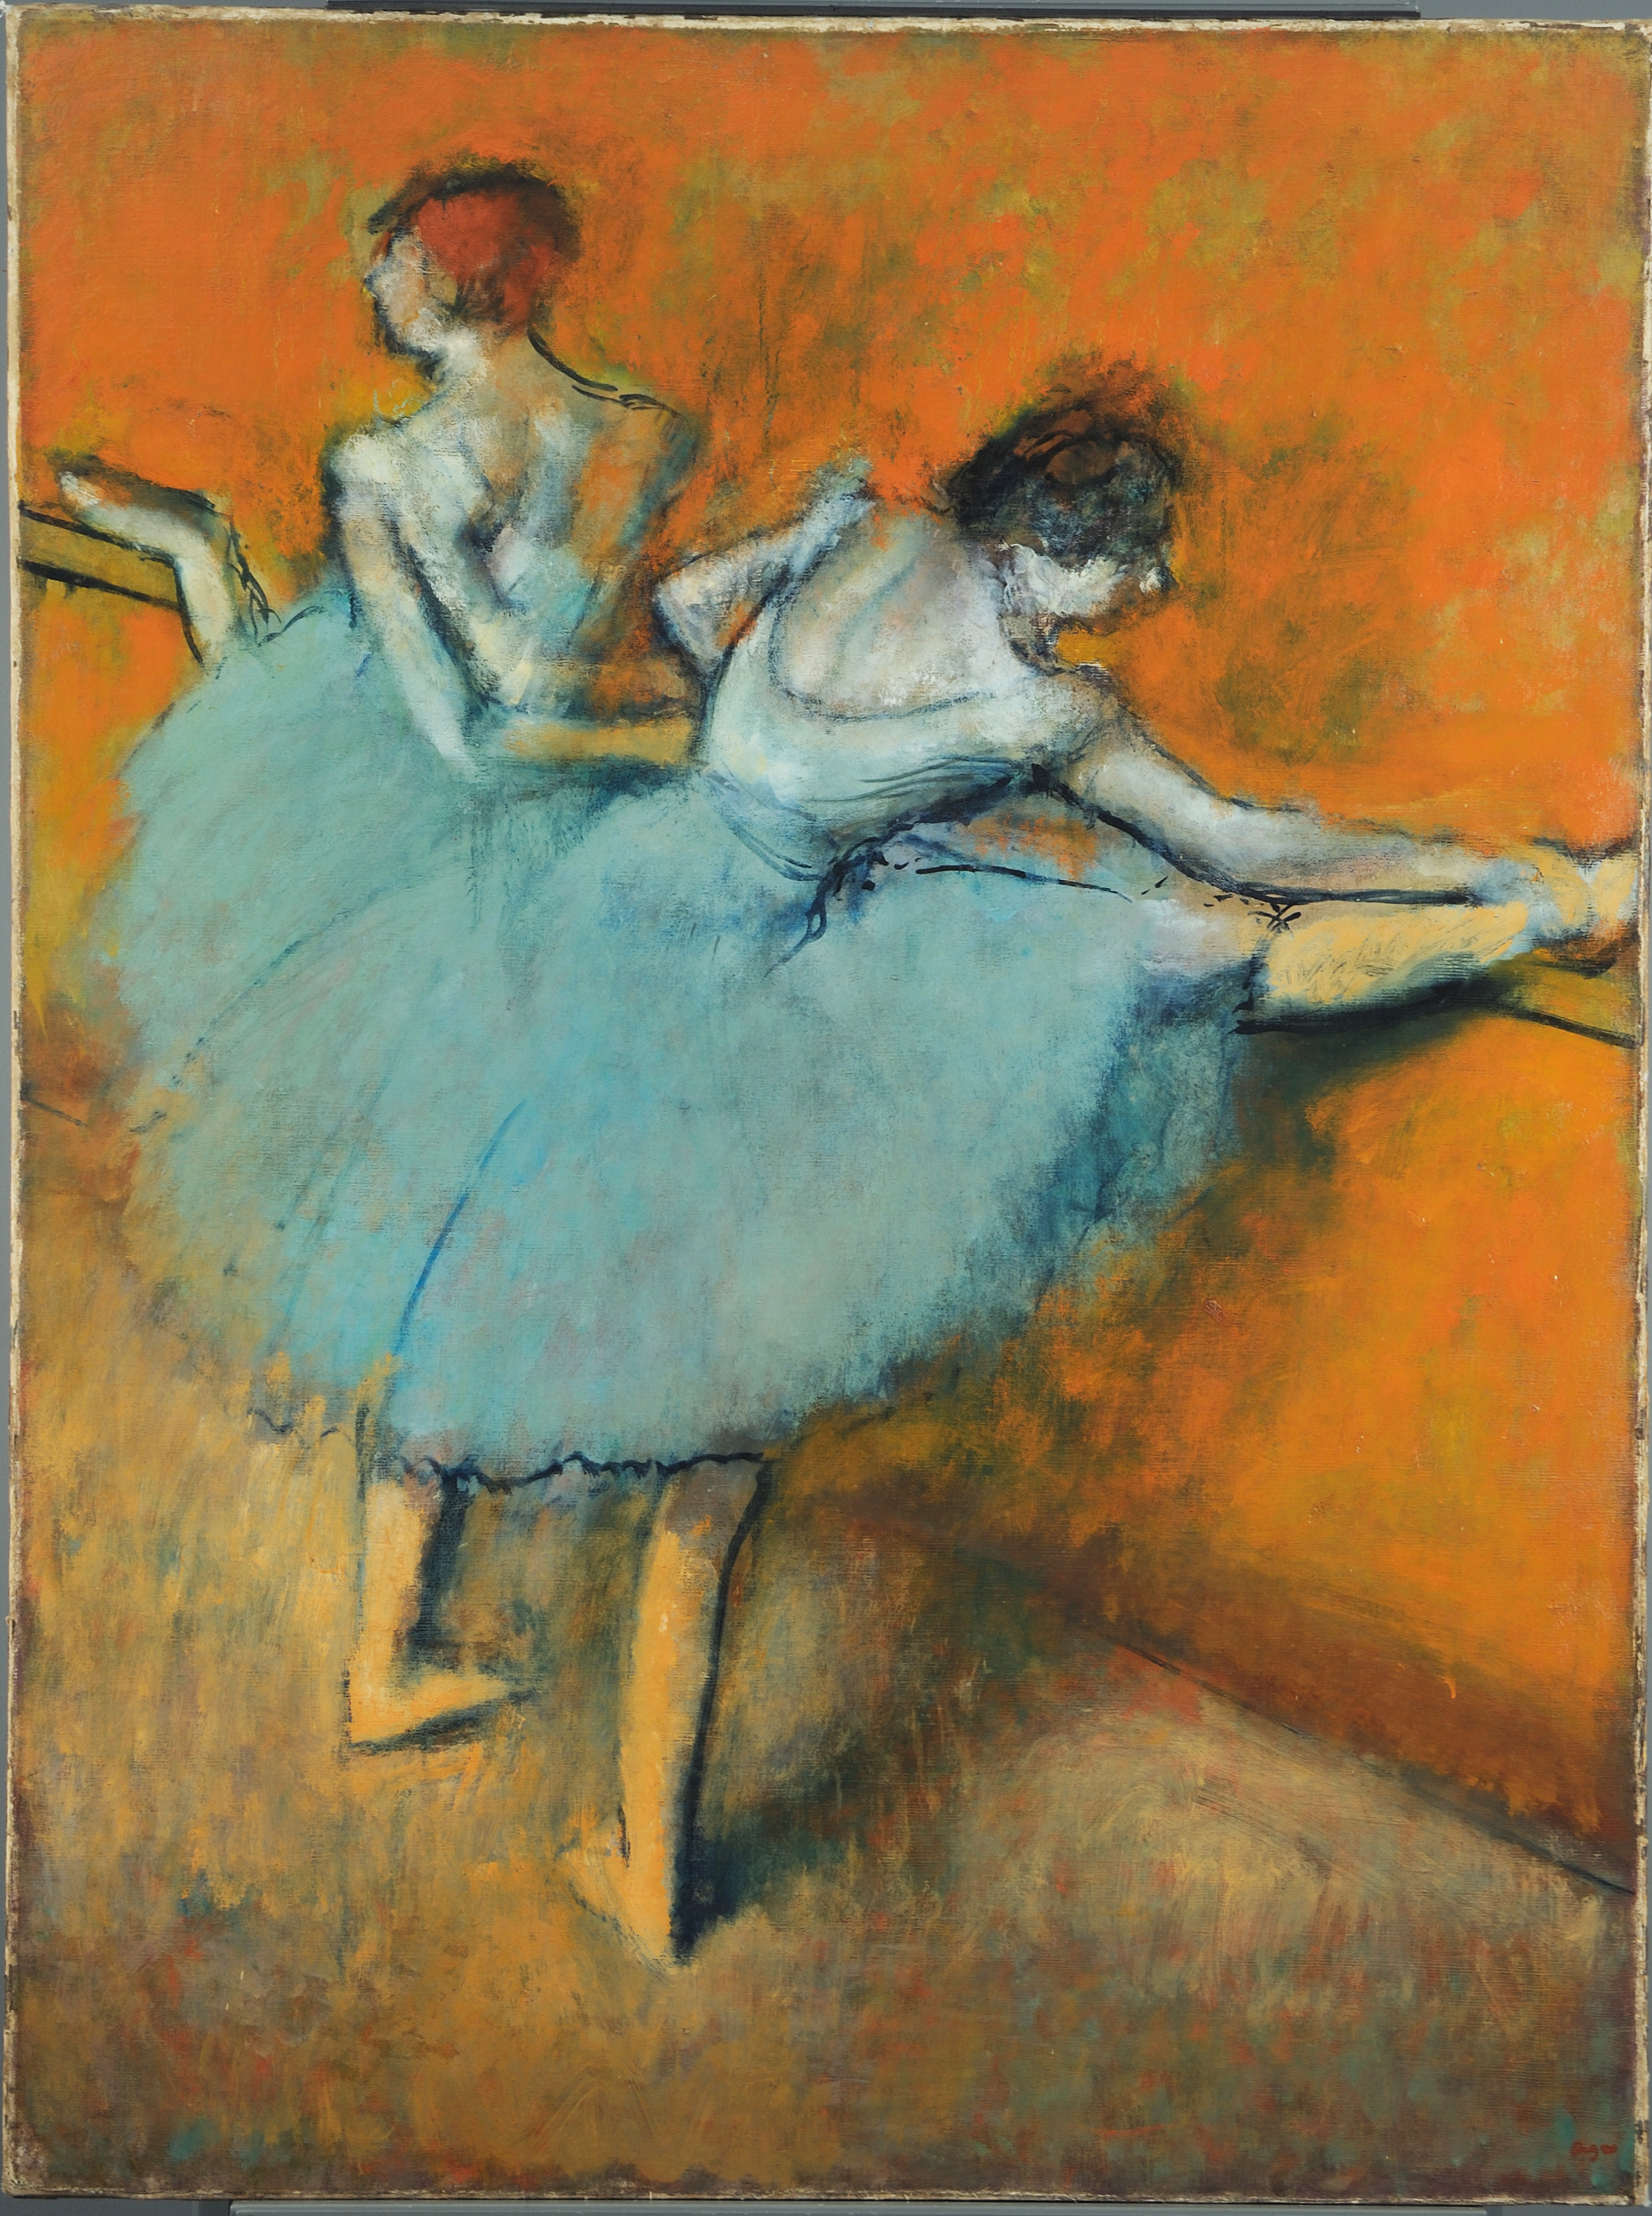 Barre'deki Dansçılar by Edgar Degas - 1900 - 51 1/4 x 38 1/2 